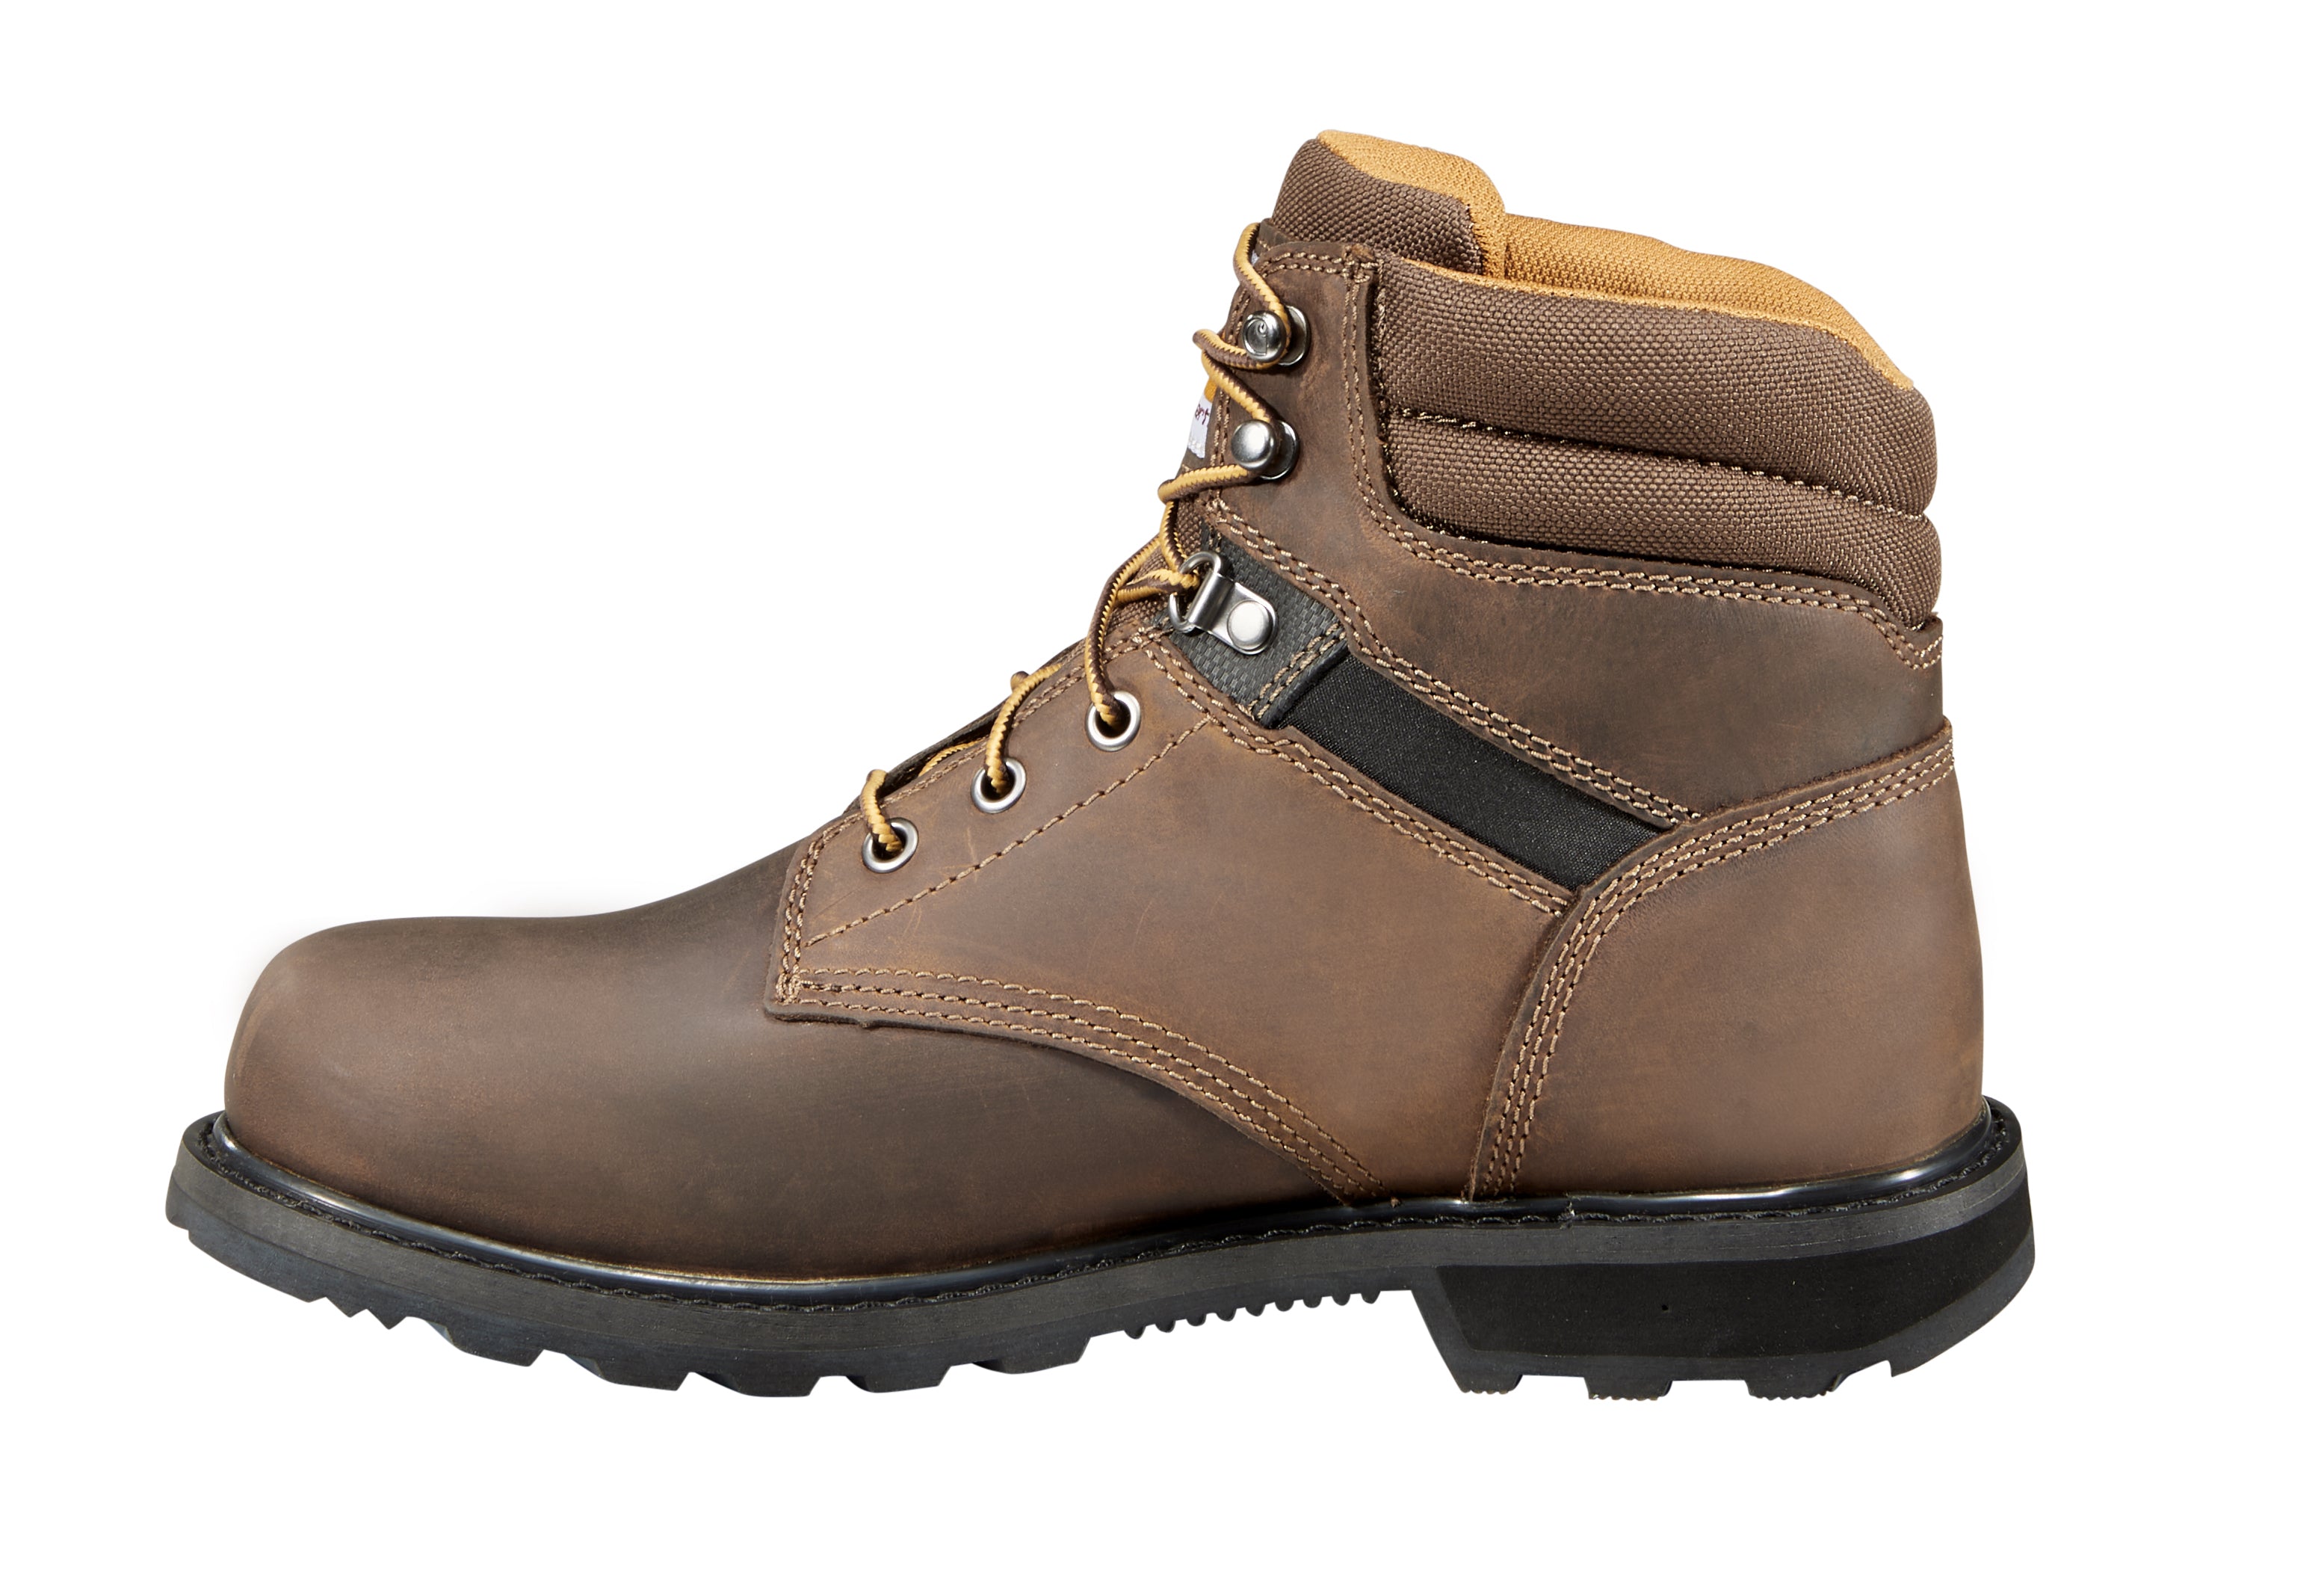 Carhartt Men's 6" Steel Toe Work Boot - Brown - CMW6274  - Overlook Boots